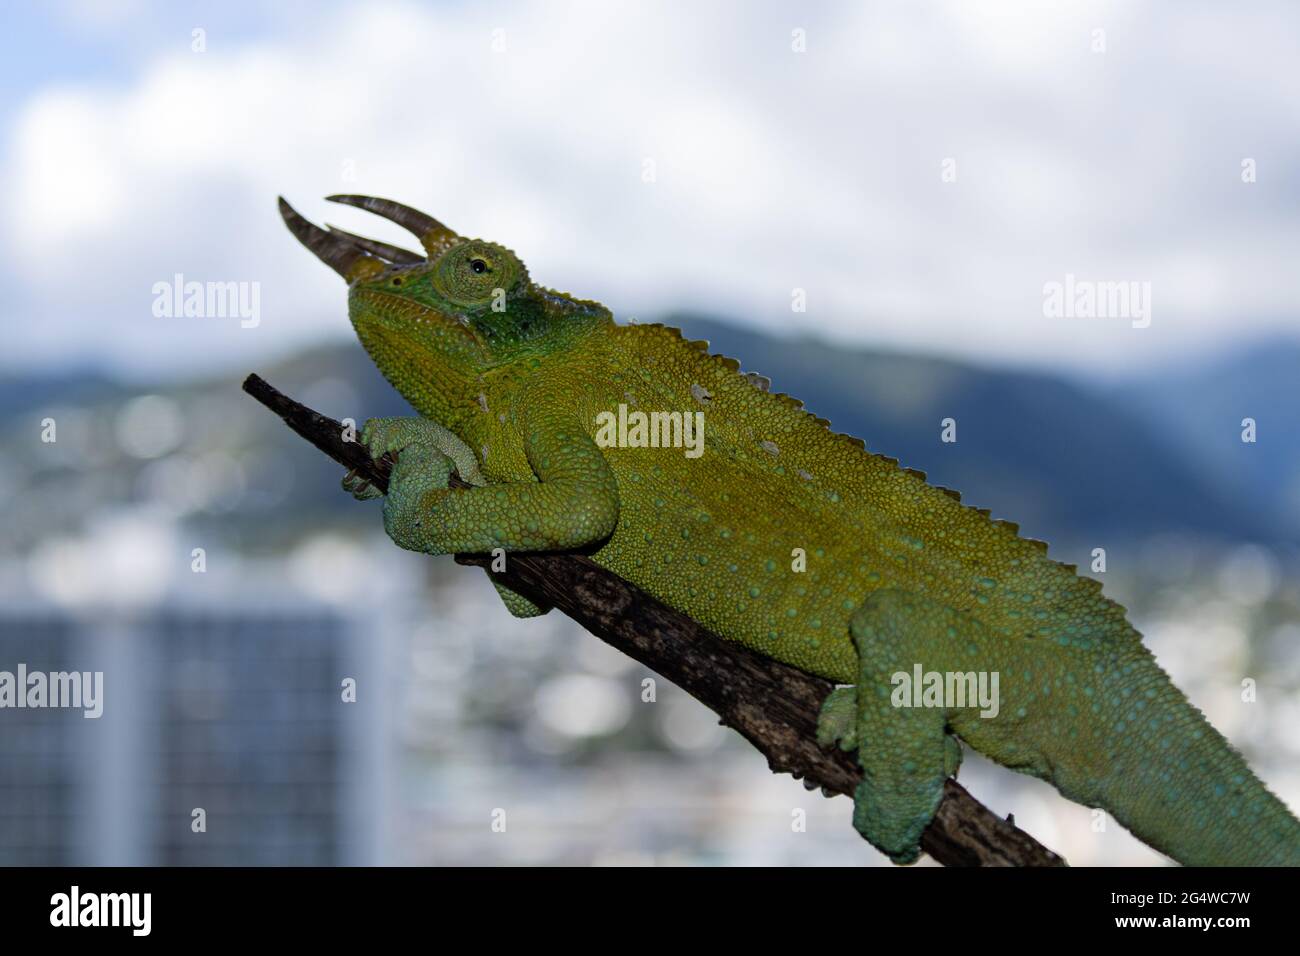 Pet chameleon captures in Oahu Hawaii Stock Photo